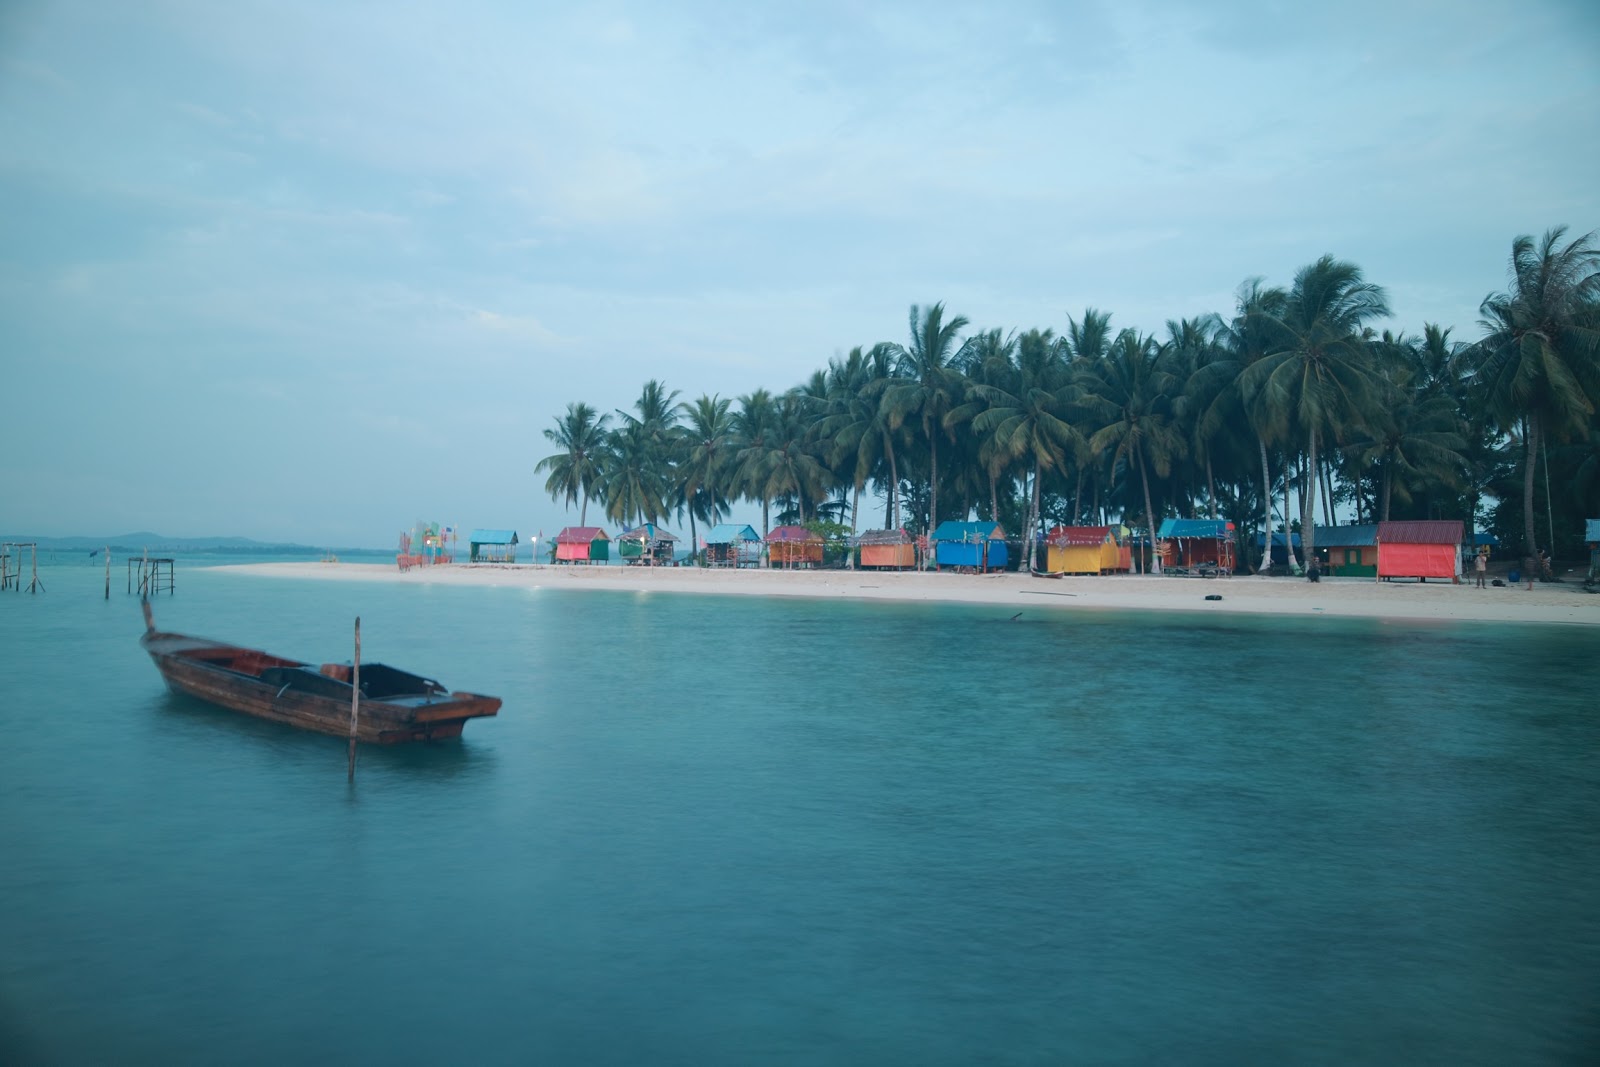 Wisata Pulau Mubut Darat'in fotoğrafı - rahatlamayı sevenler arasında popüler bir yer